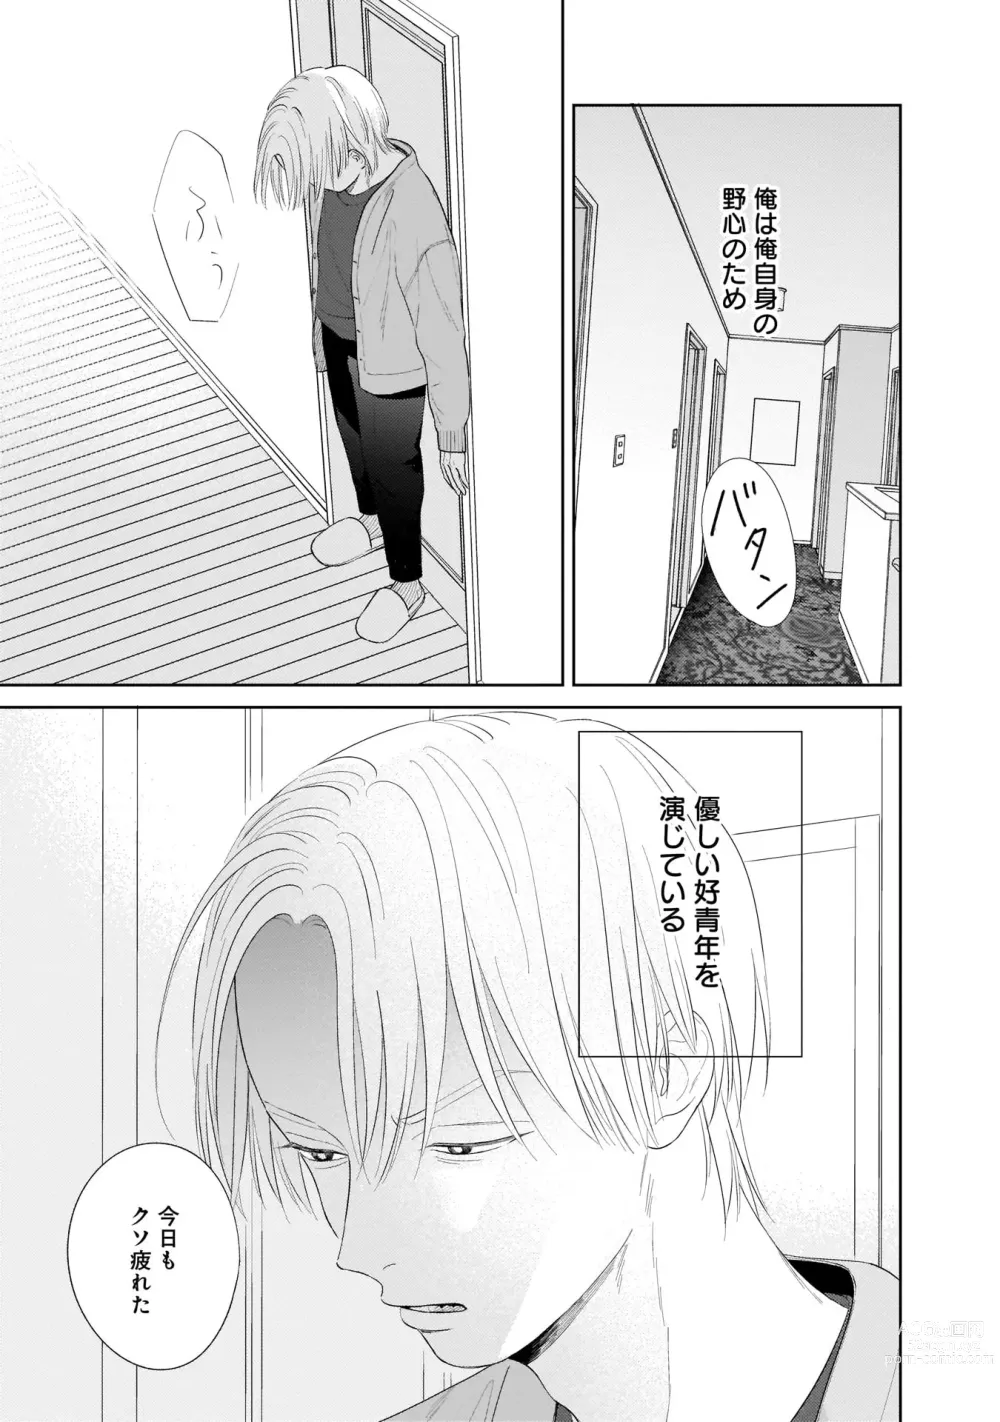 Page 15 of manga Kimi no Koto, Omote de Korashime Ura de Aishite. Kanzenban